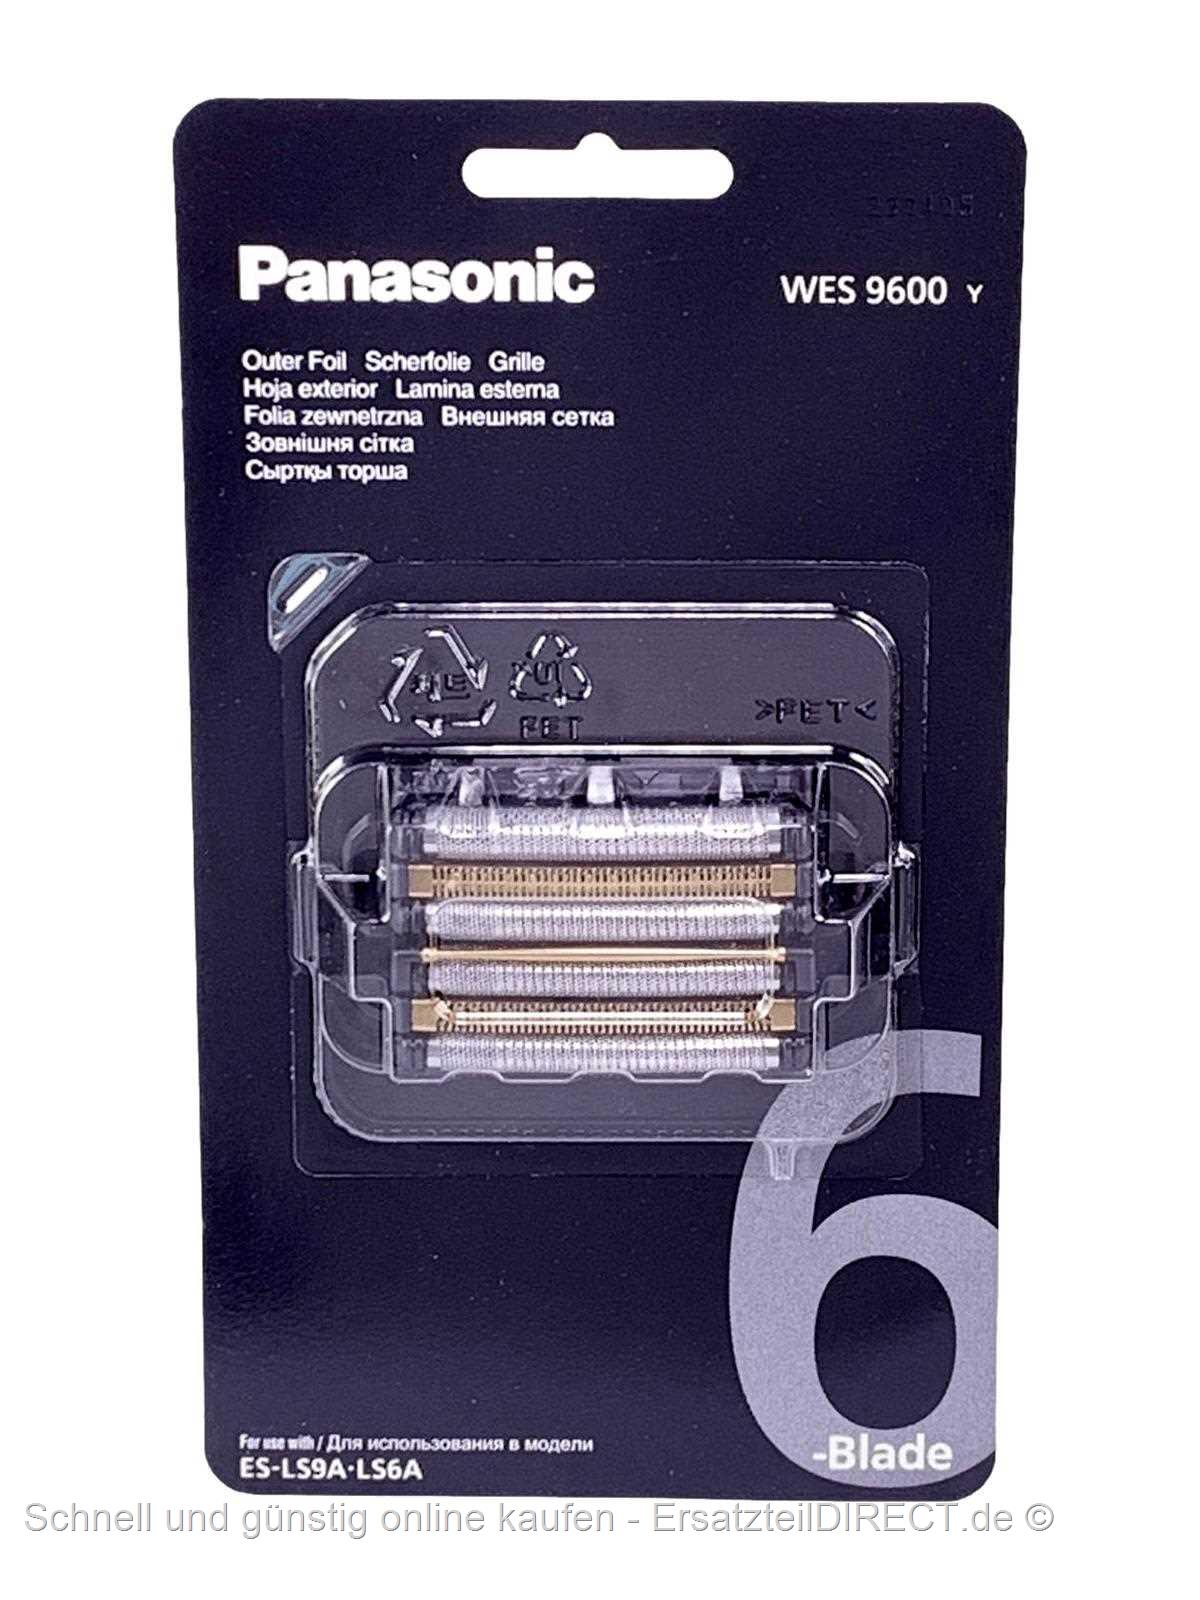 Panasonic Kombipack Scherfolie WES9600Y bei WES9600 günstig +Klingen kaufen